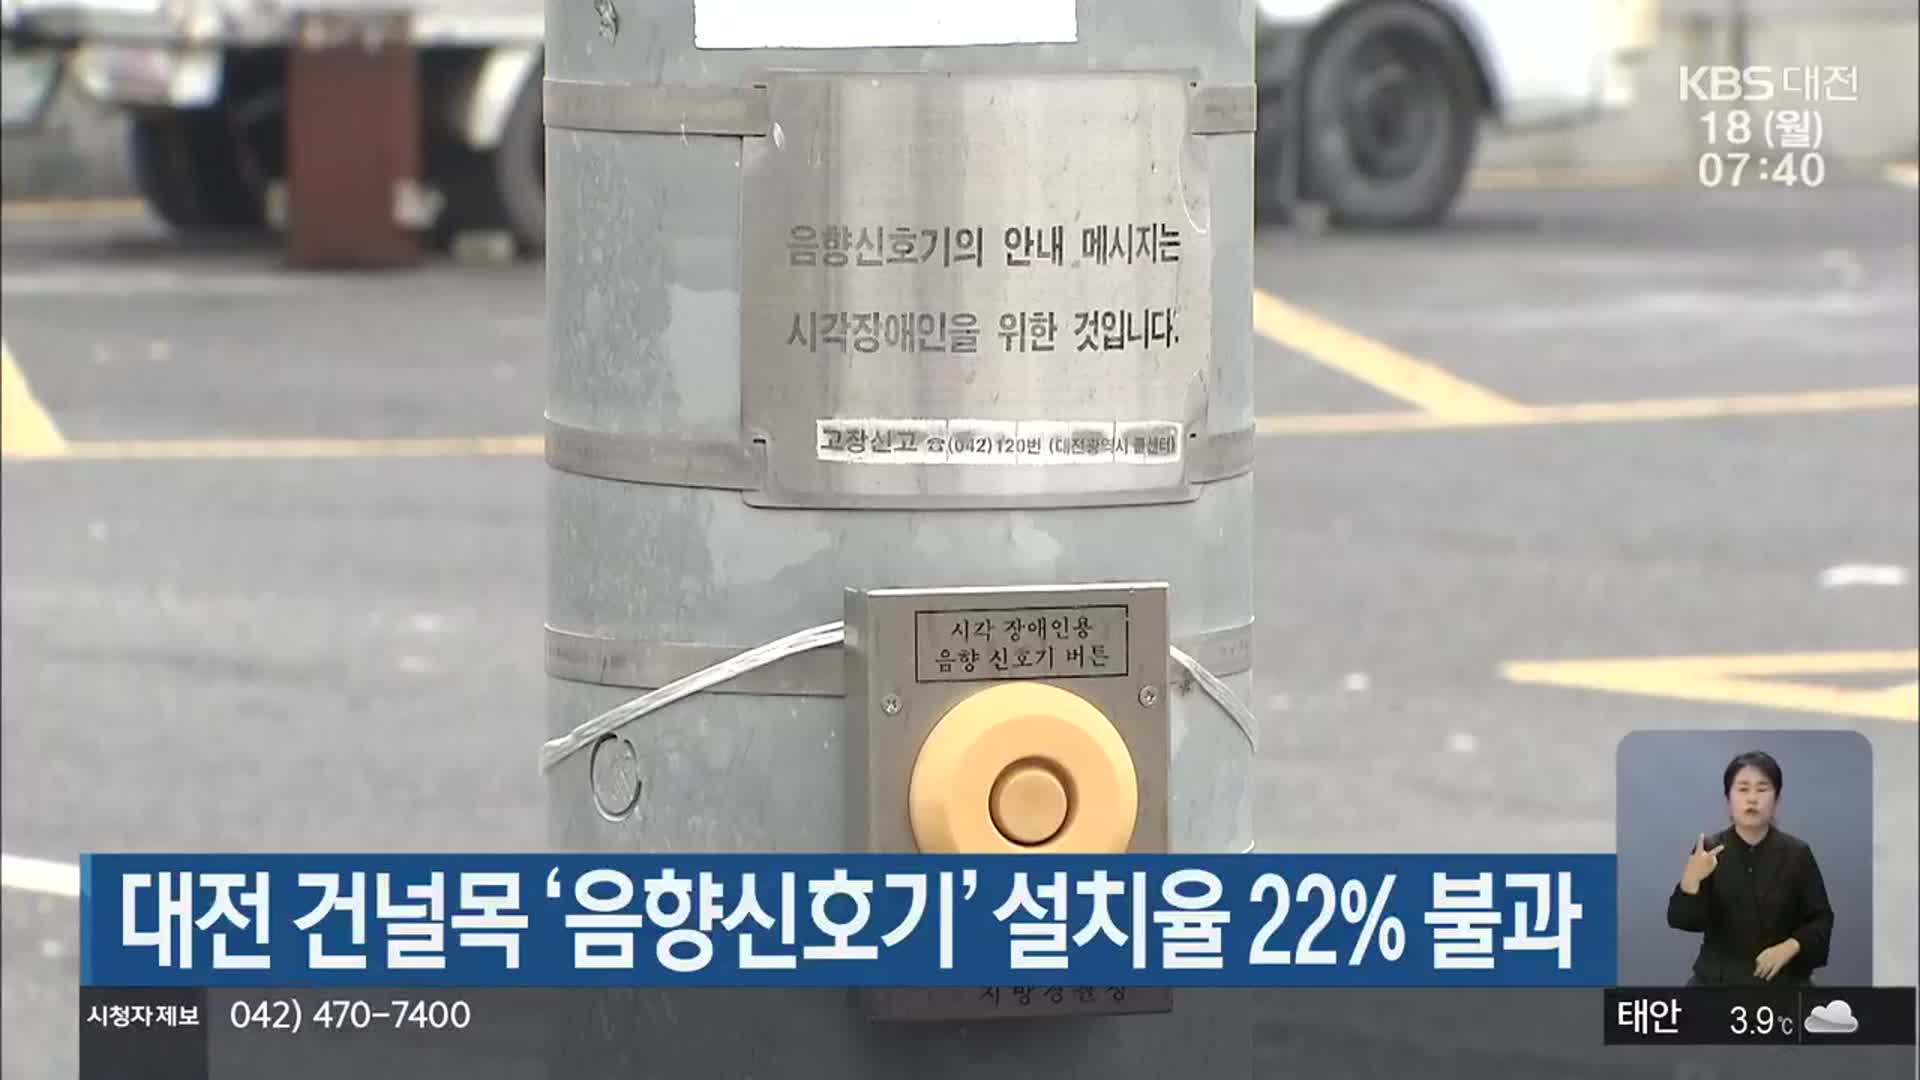 대전 건널목 ‘음향신호기’ 설치율 22% 불과